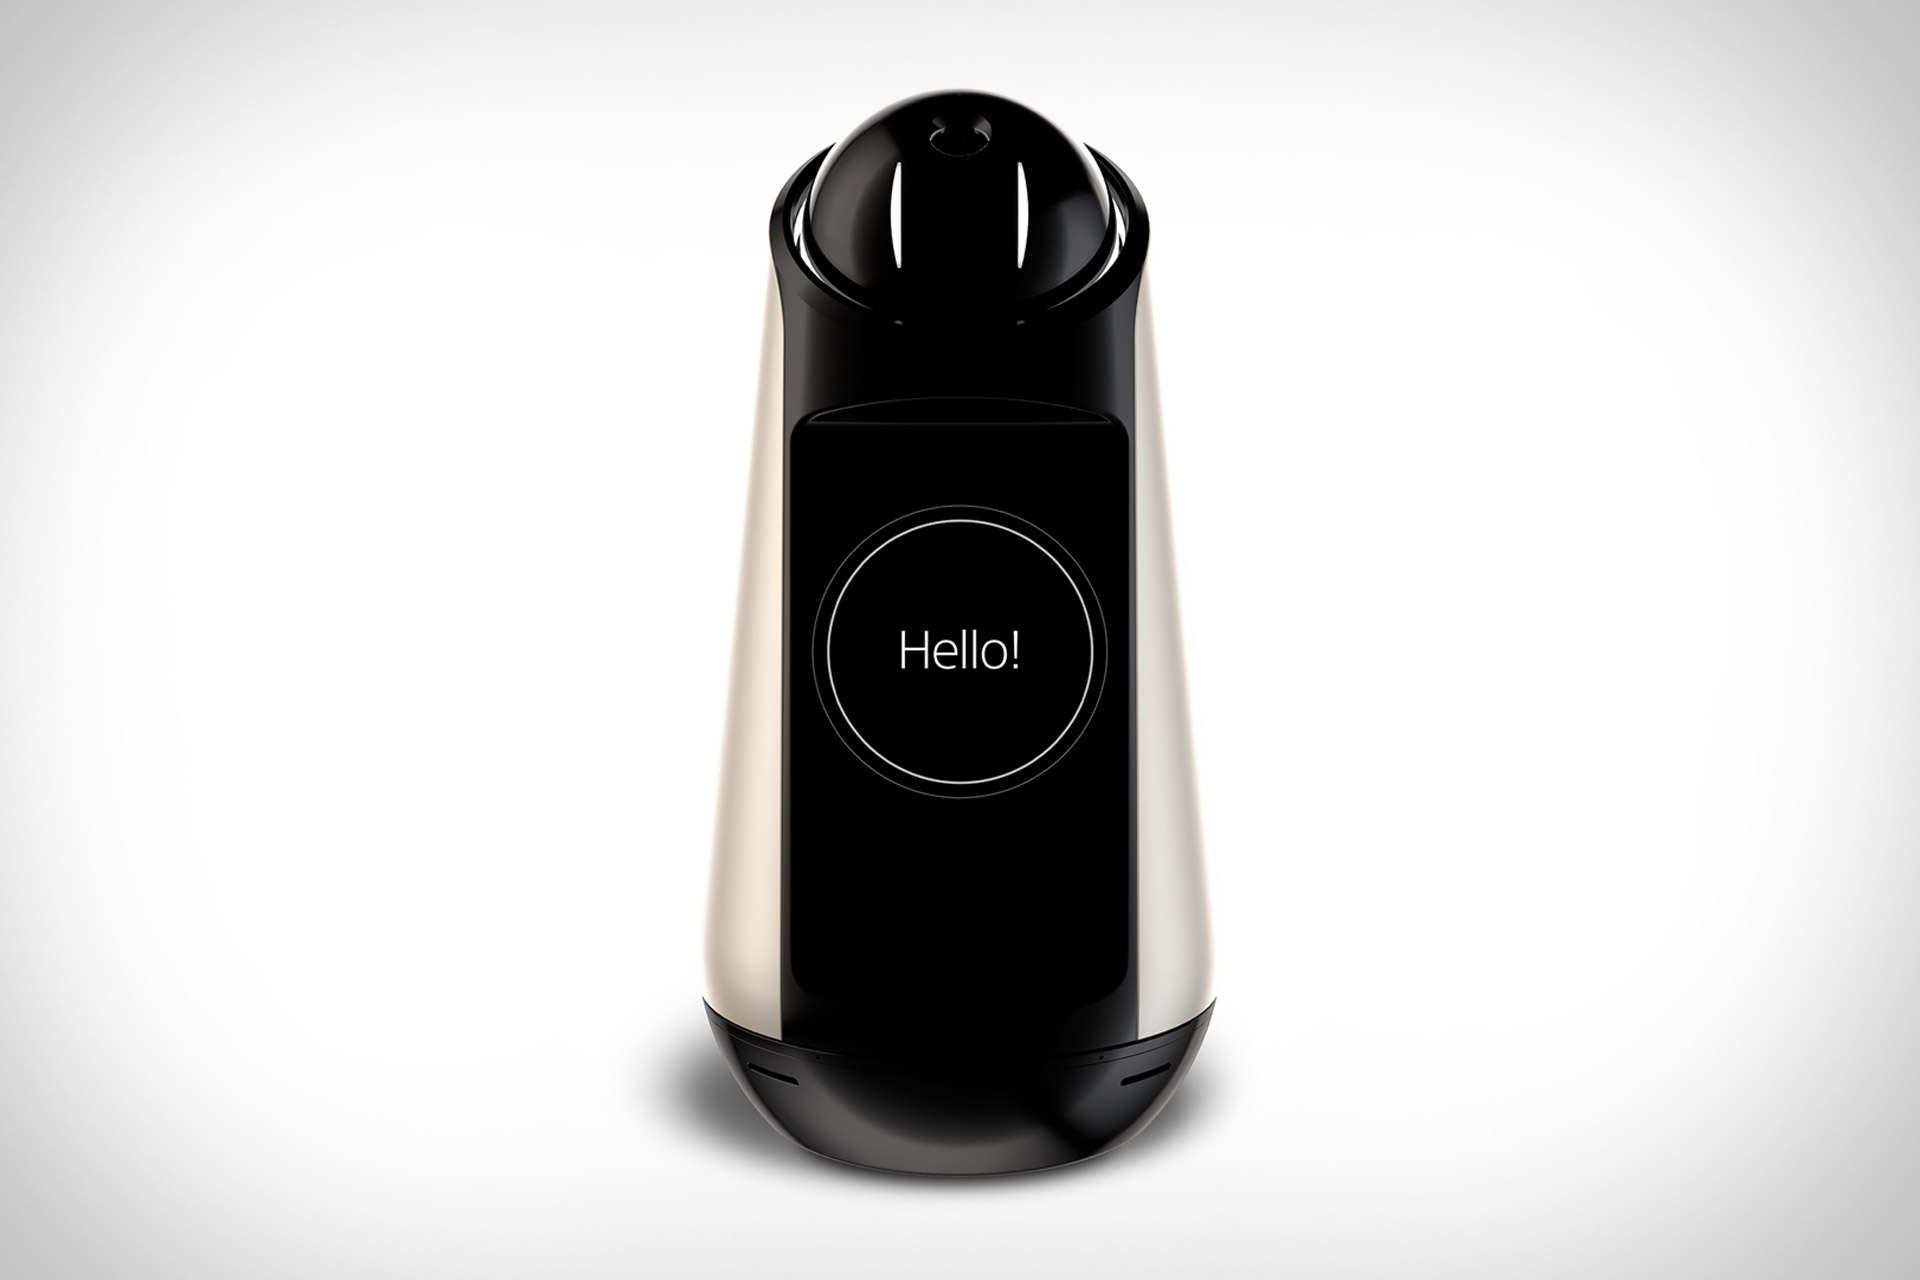 Sony Xperia Hello robot hoparlör duyuruldu